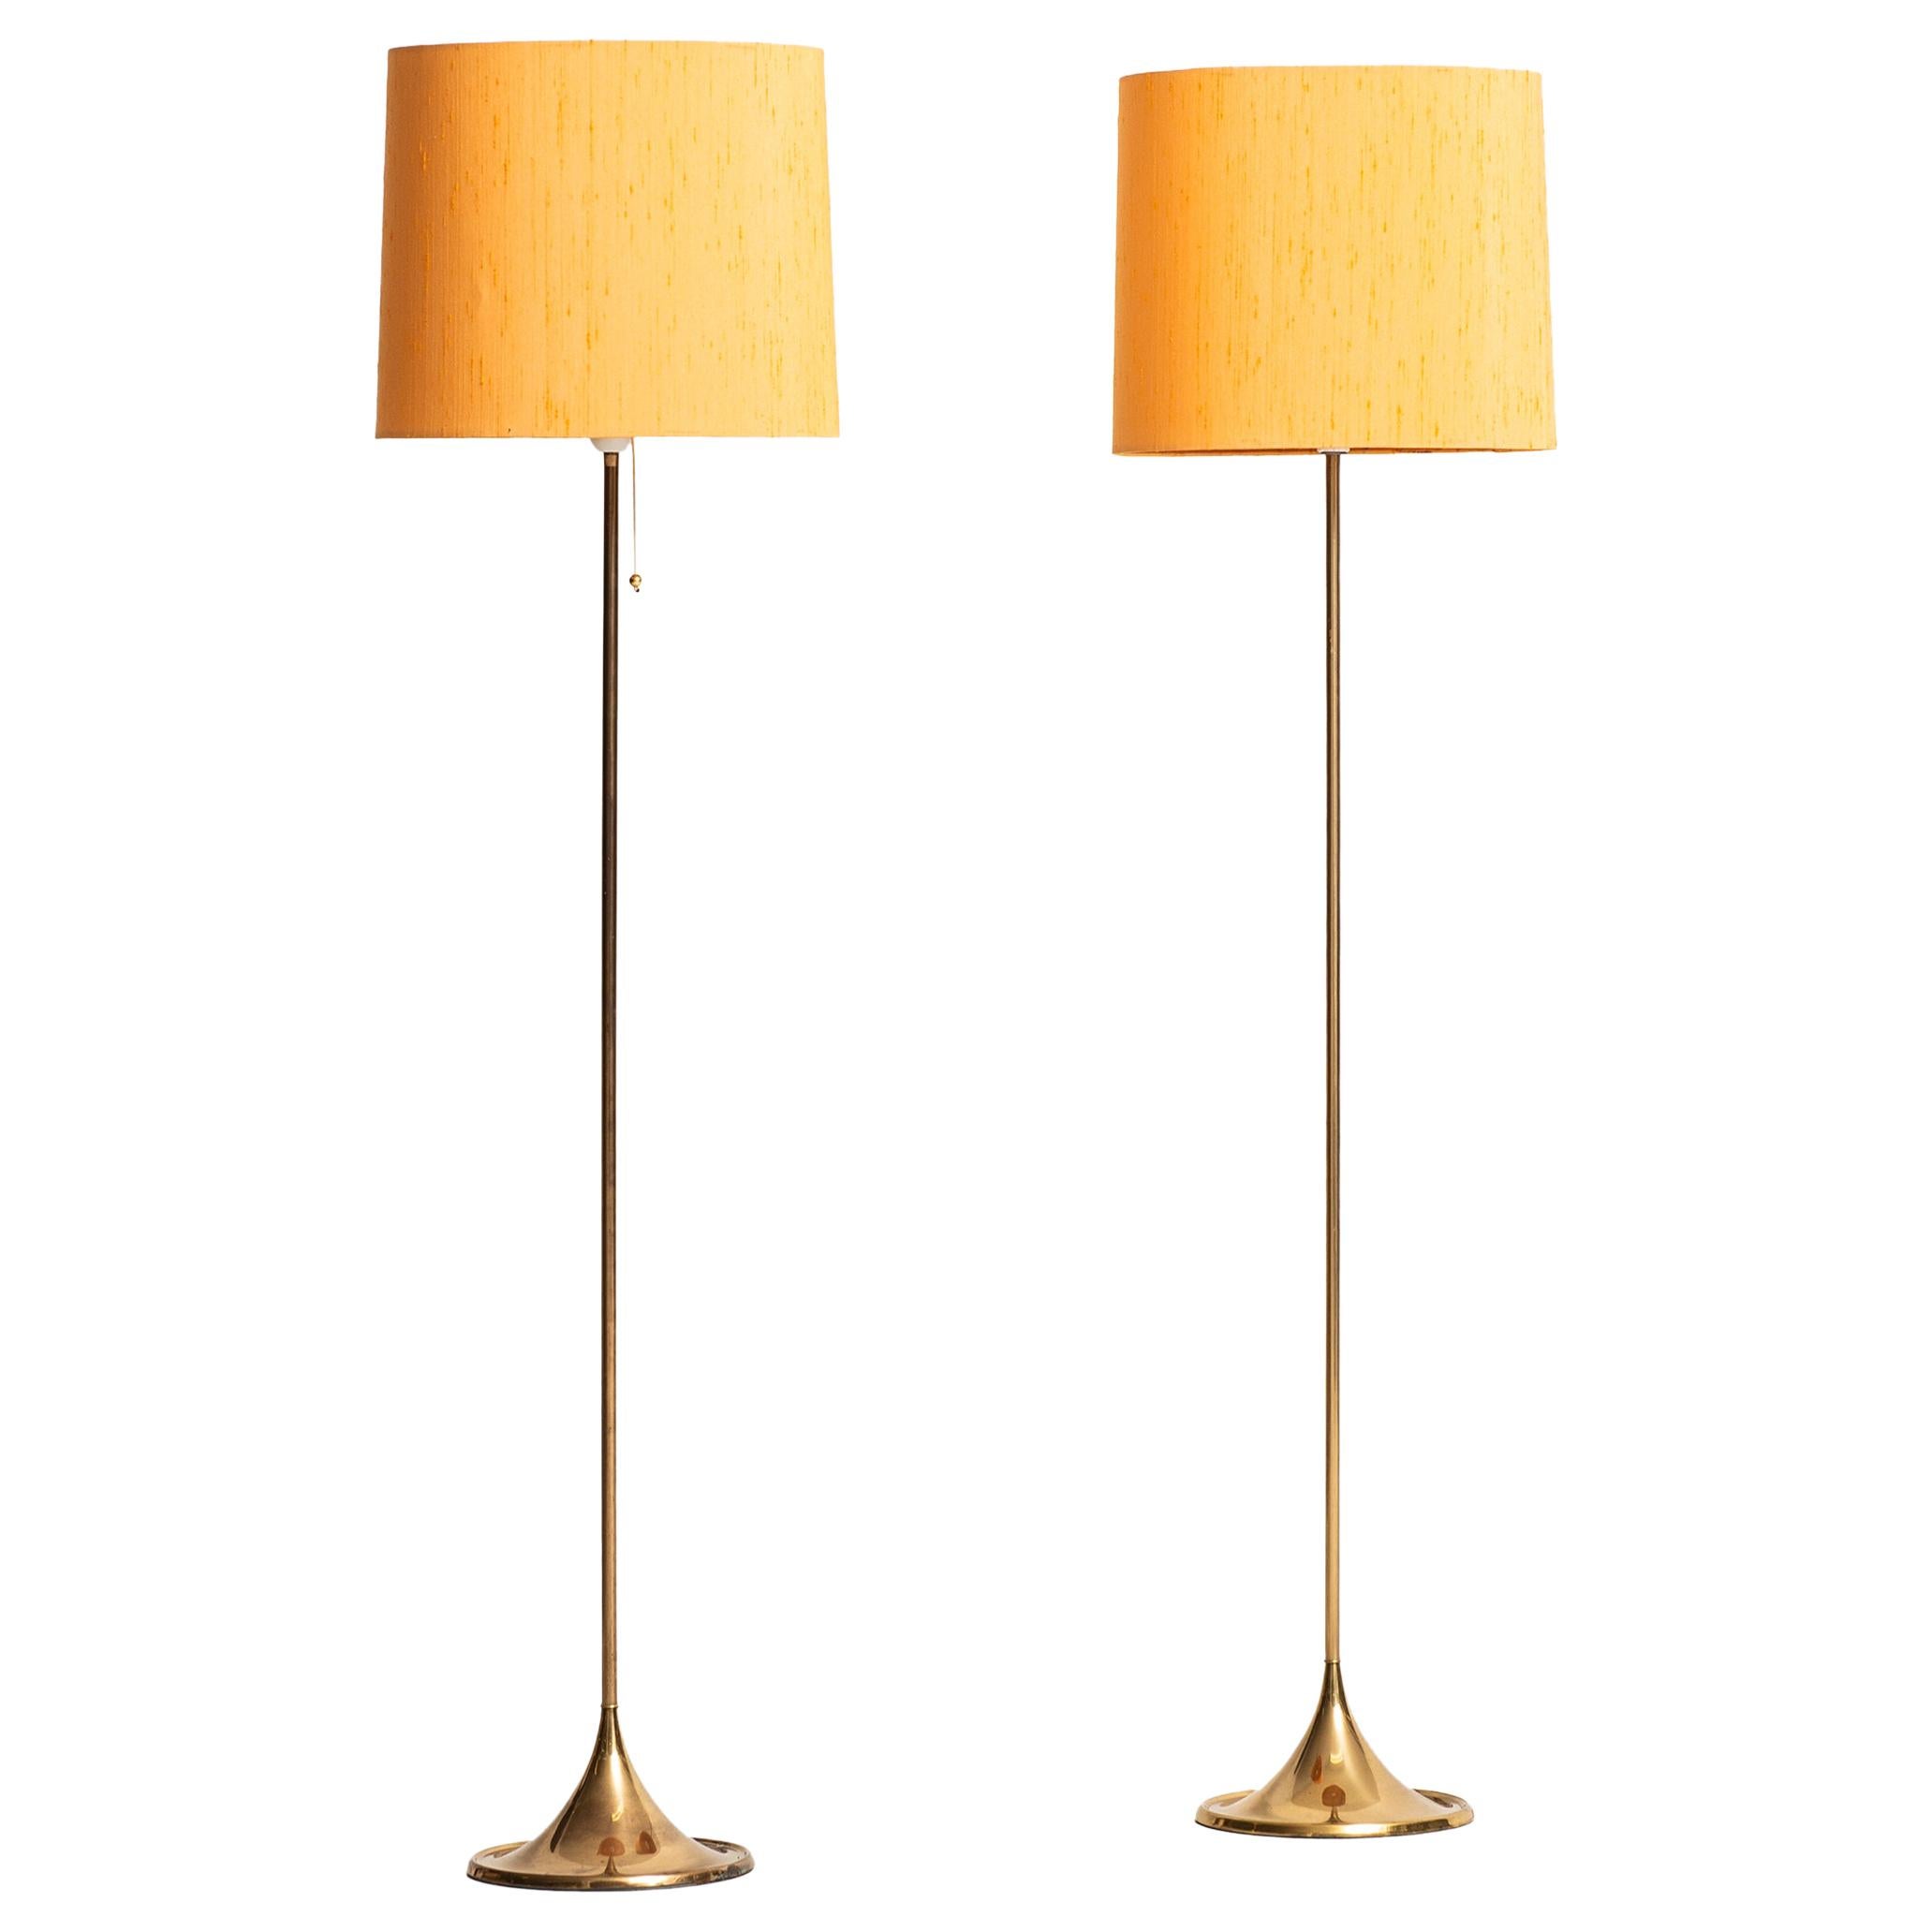 Alf Svensson & Yngvar Sandström Floor Lamps Model G-024 by Bergbom in Sweden For Sale